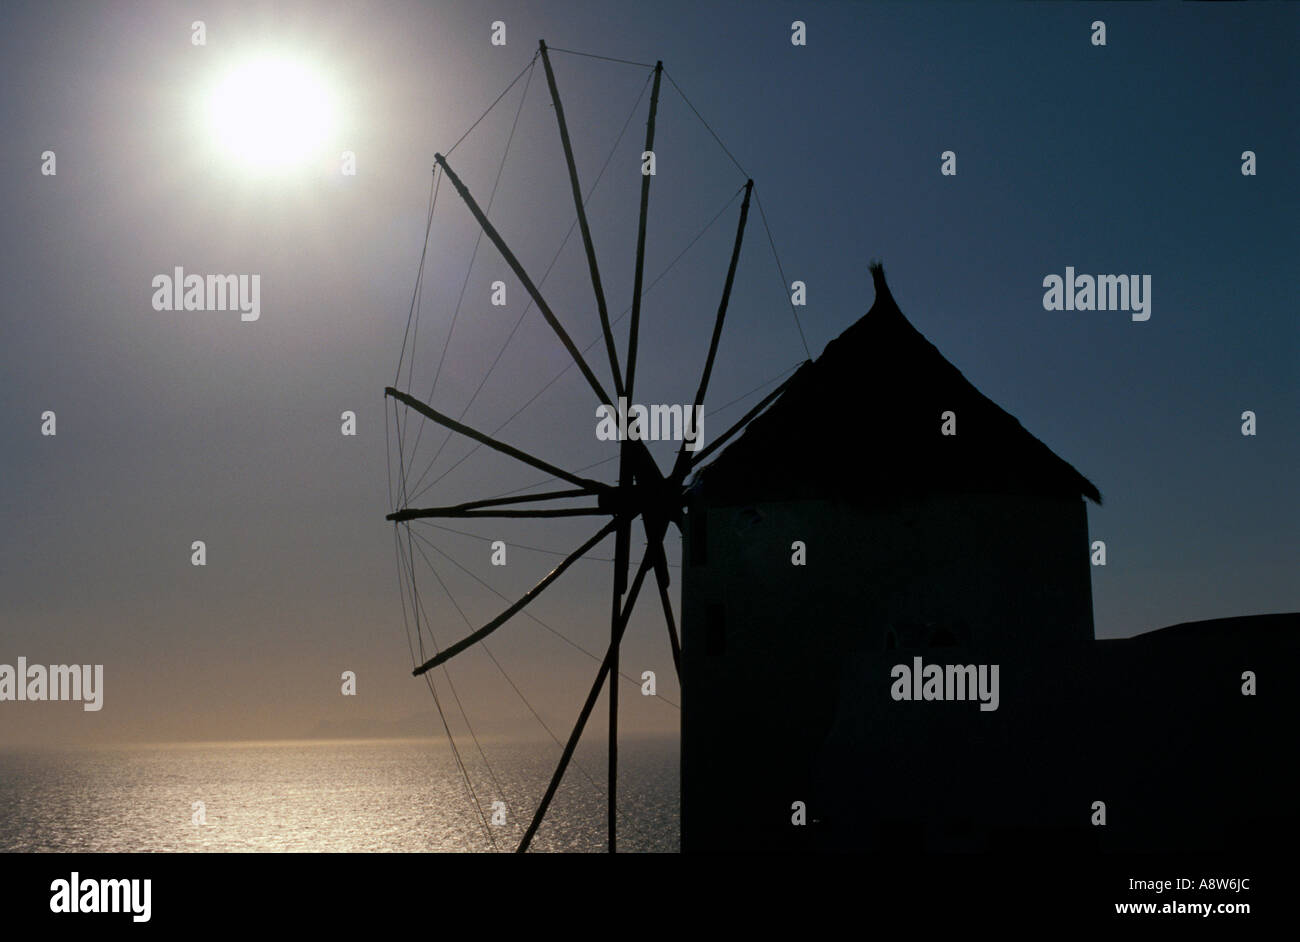 Windmill on the Santorini Island at Sunset, Greece Stock Photo